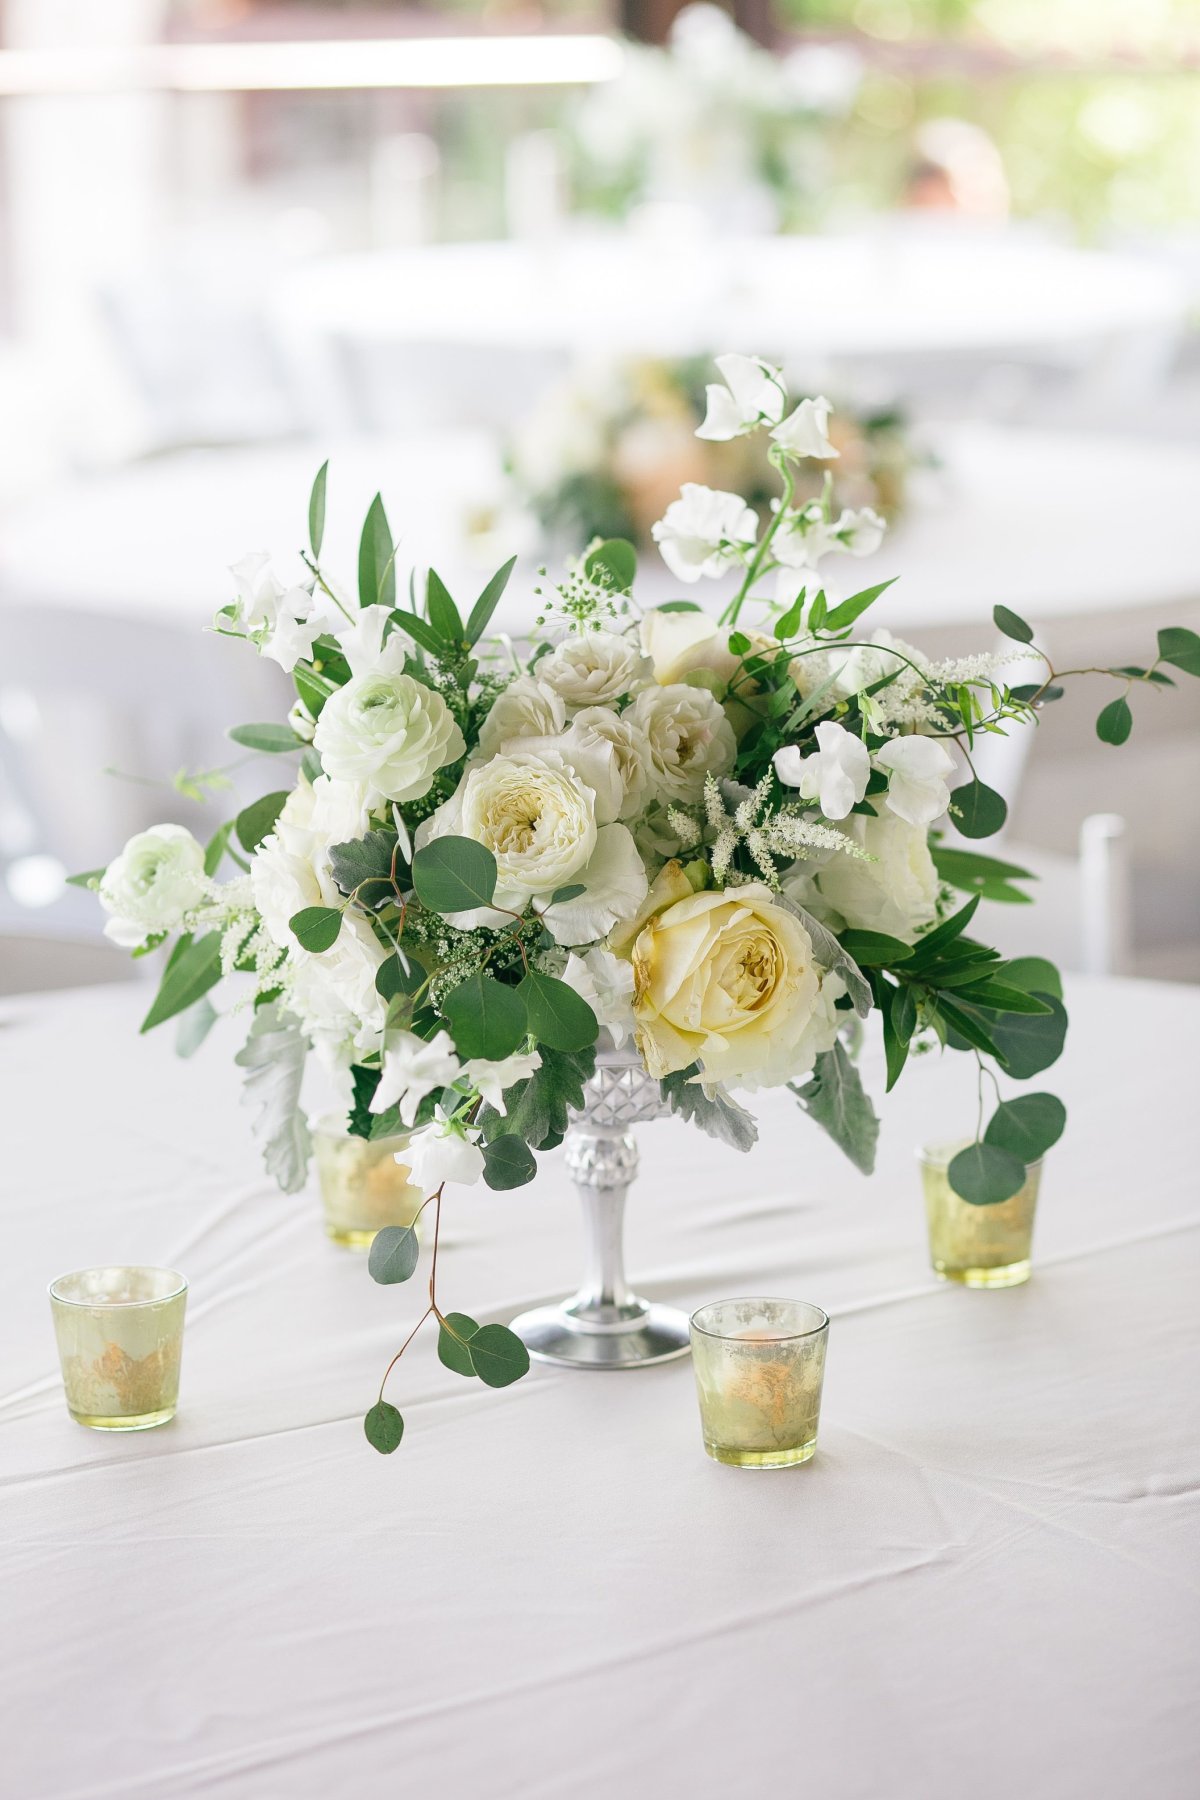 Оформление (украшение) свадебного стола цветами